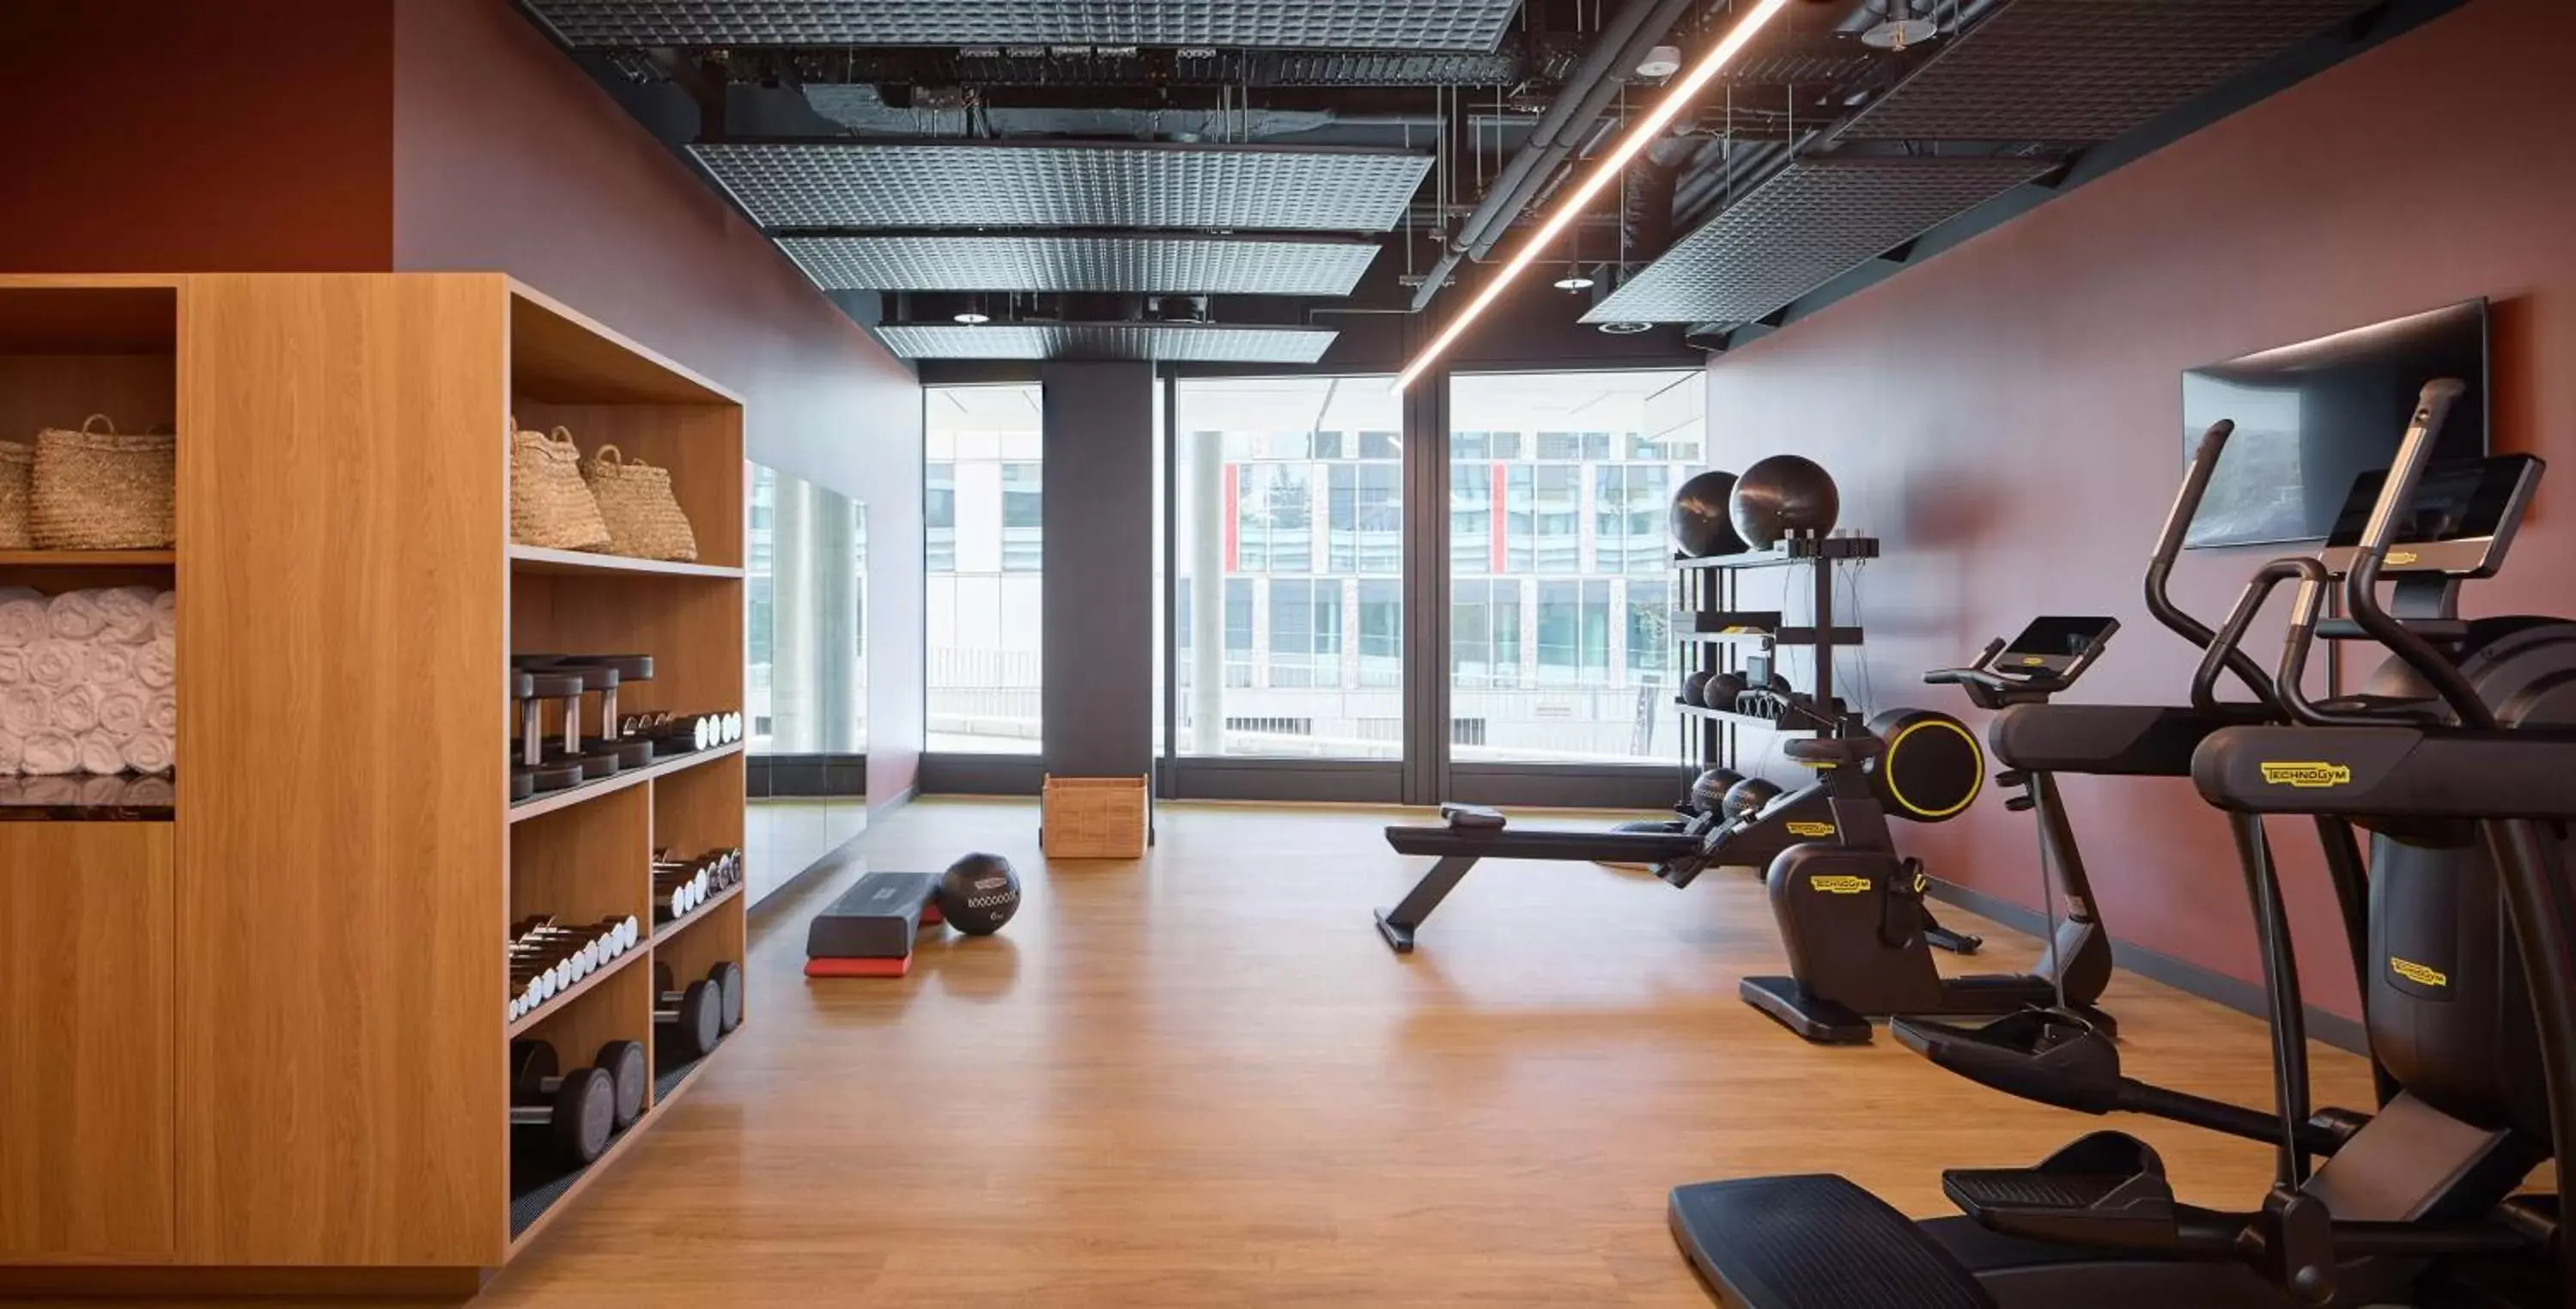 Fitness centre/facilities, Fitness Center/Facilities in Adina Apartment Hotel Geneva